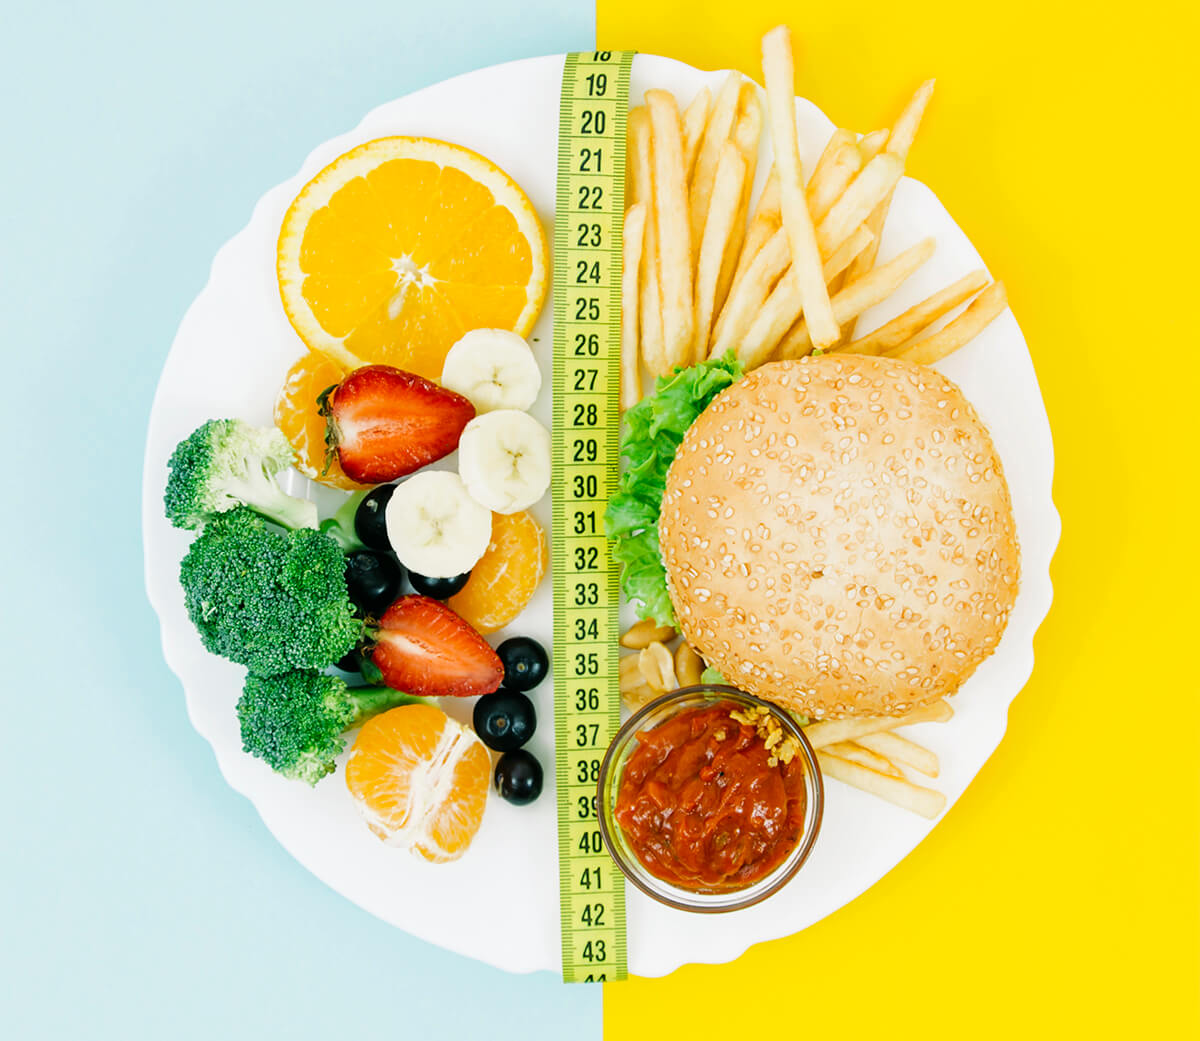 Talerz podzielony metrem na zdrową i niezdrową dietę - jesteś tym co jesz